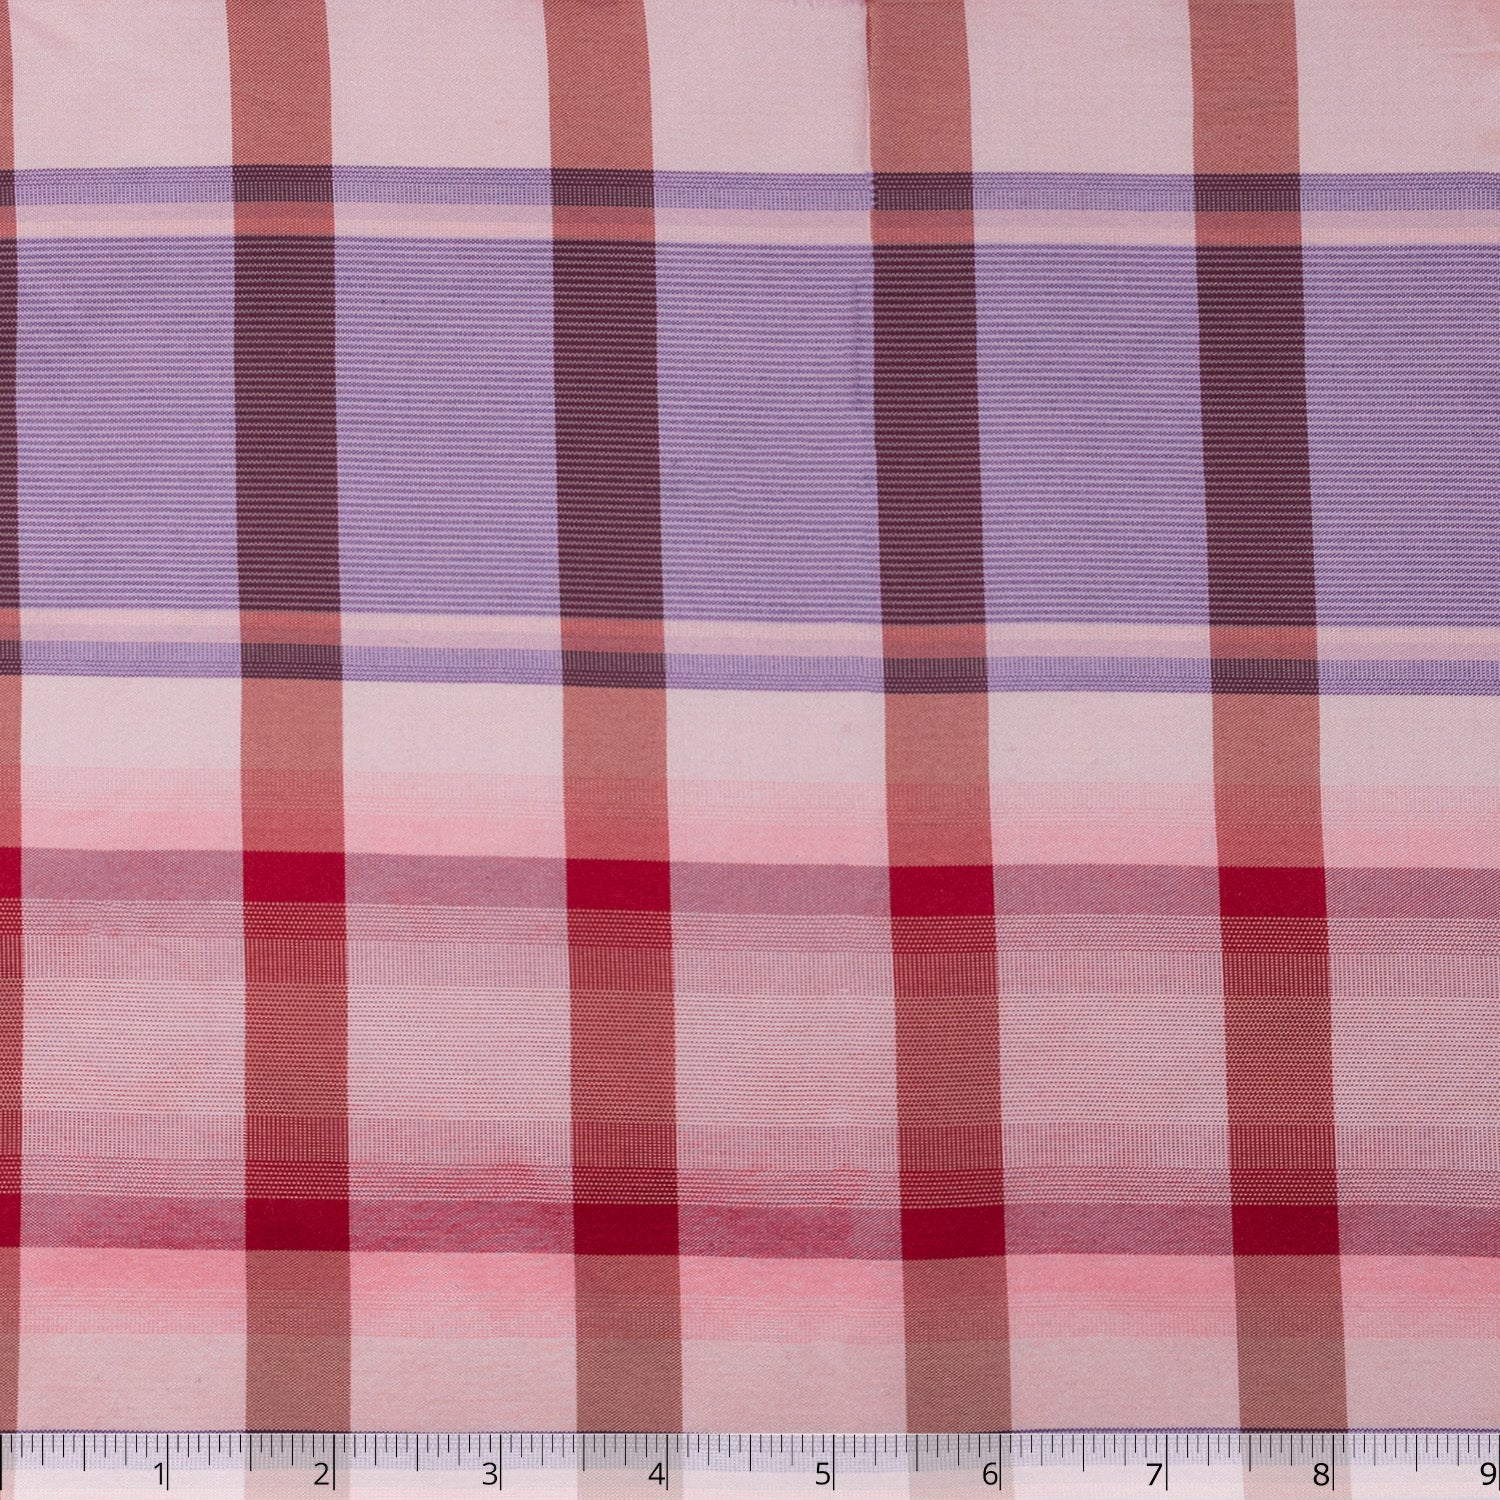 Pink/Purple/Red Plaid Silk Taffeta - $20.00 yd. - Burnley & Trowbridge Co.